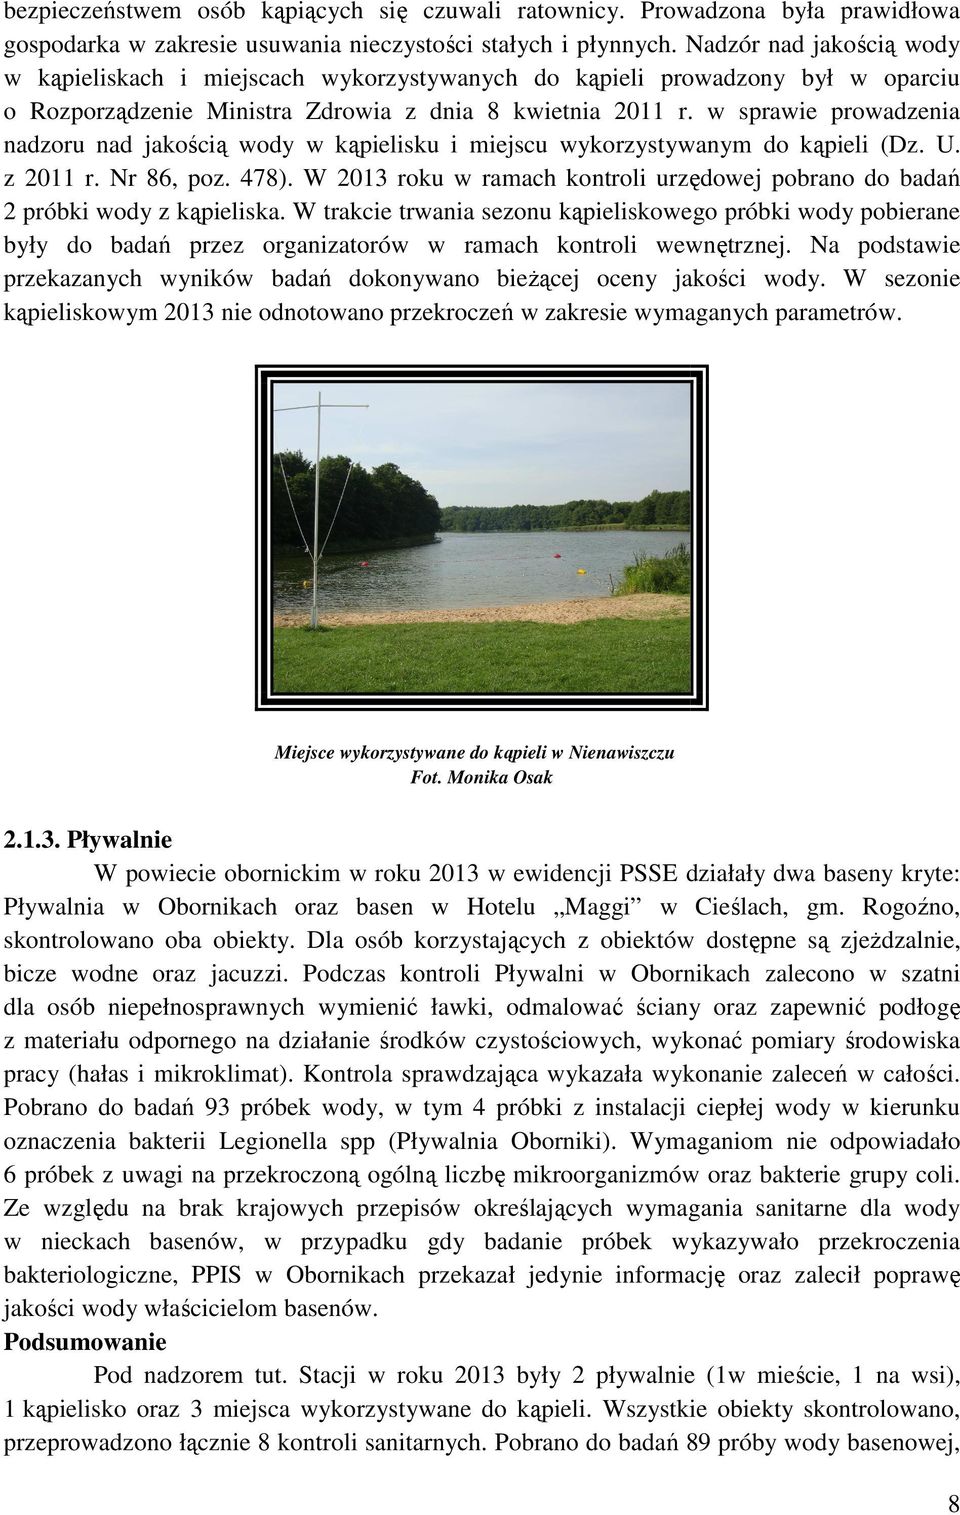 w sprawie prowadzenia nadzoru nad jakością wody w kąpielisku i miejscu wykorzystywanym do kąpieli (Dz. U. z 2011 r. Nr 86, poz. 478).